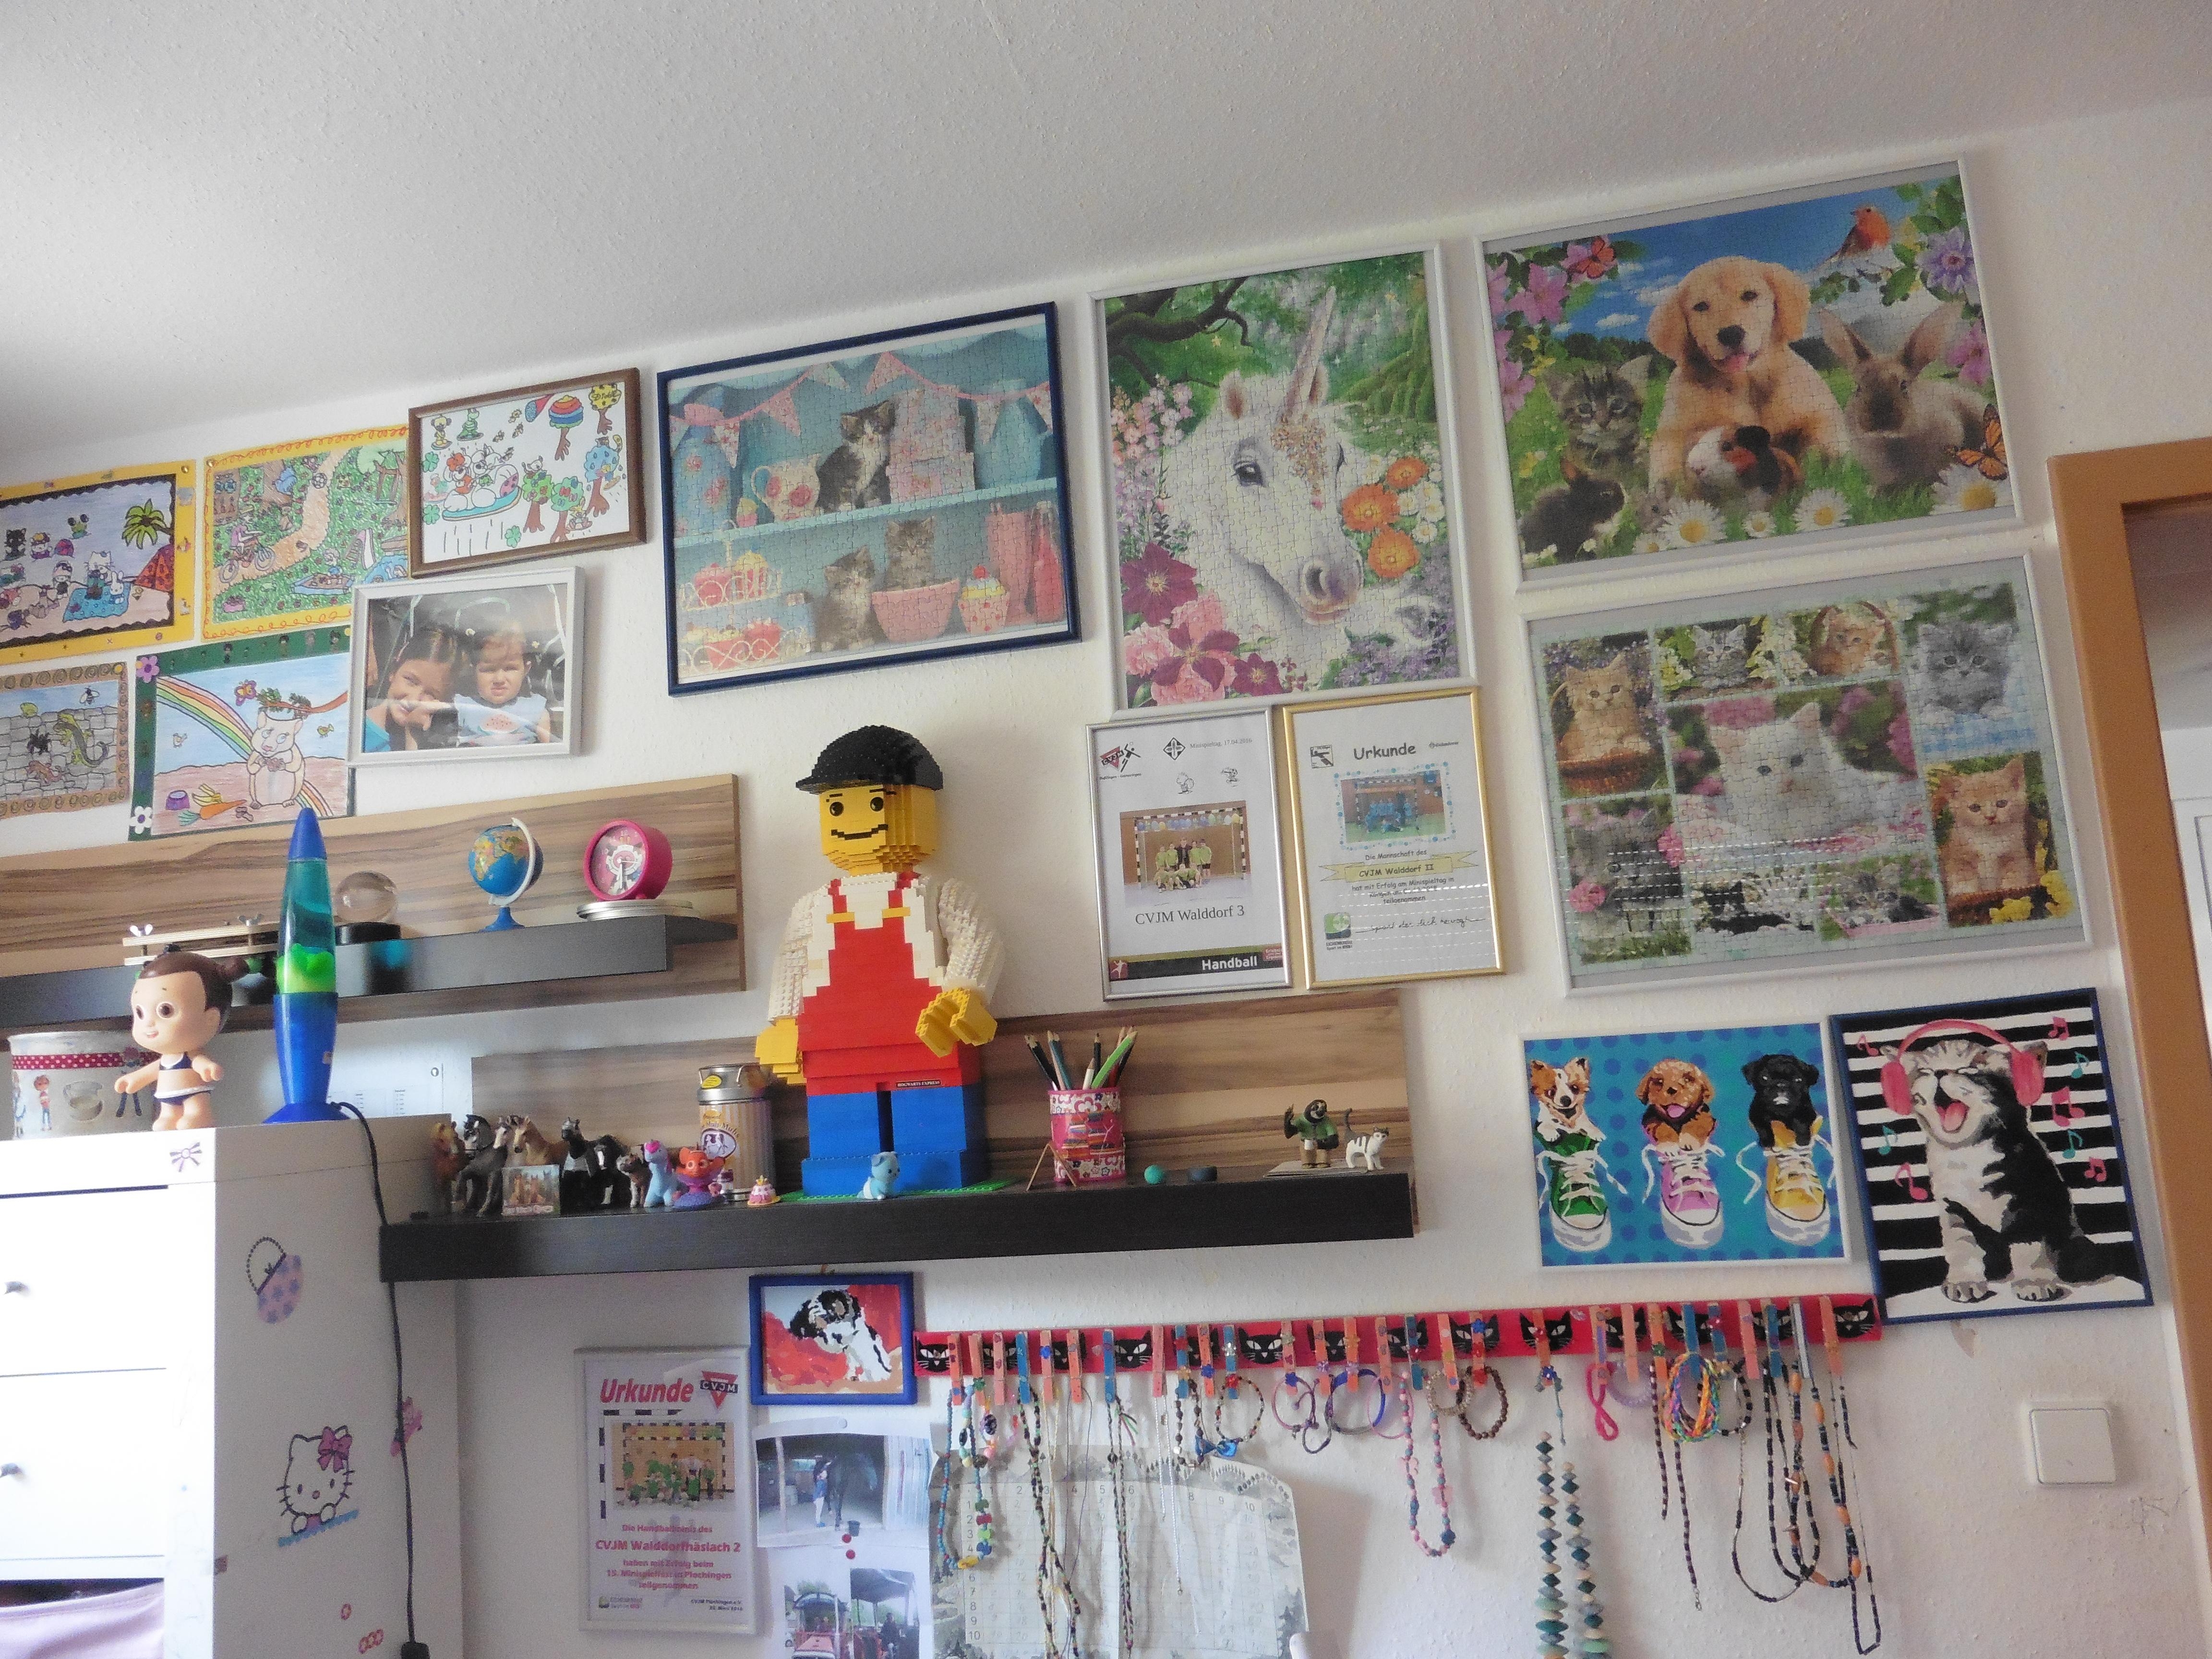 #DIYWeek #DIYDeko das haben meine Kinder und ich alles selbst gebastelt, gemalt, dekoriert und gebaut :)